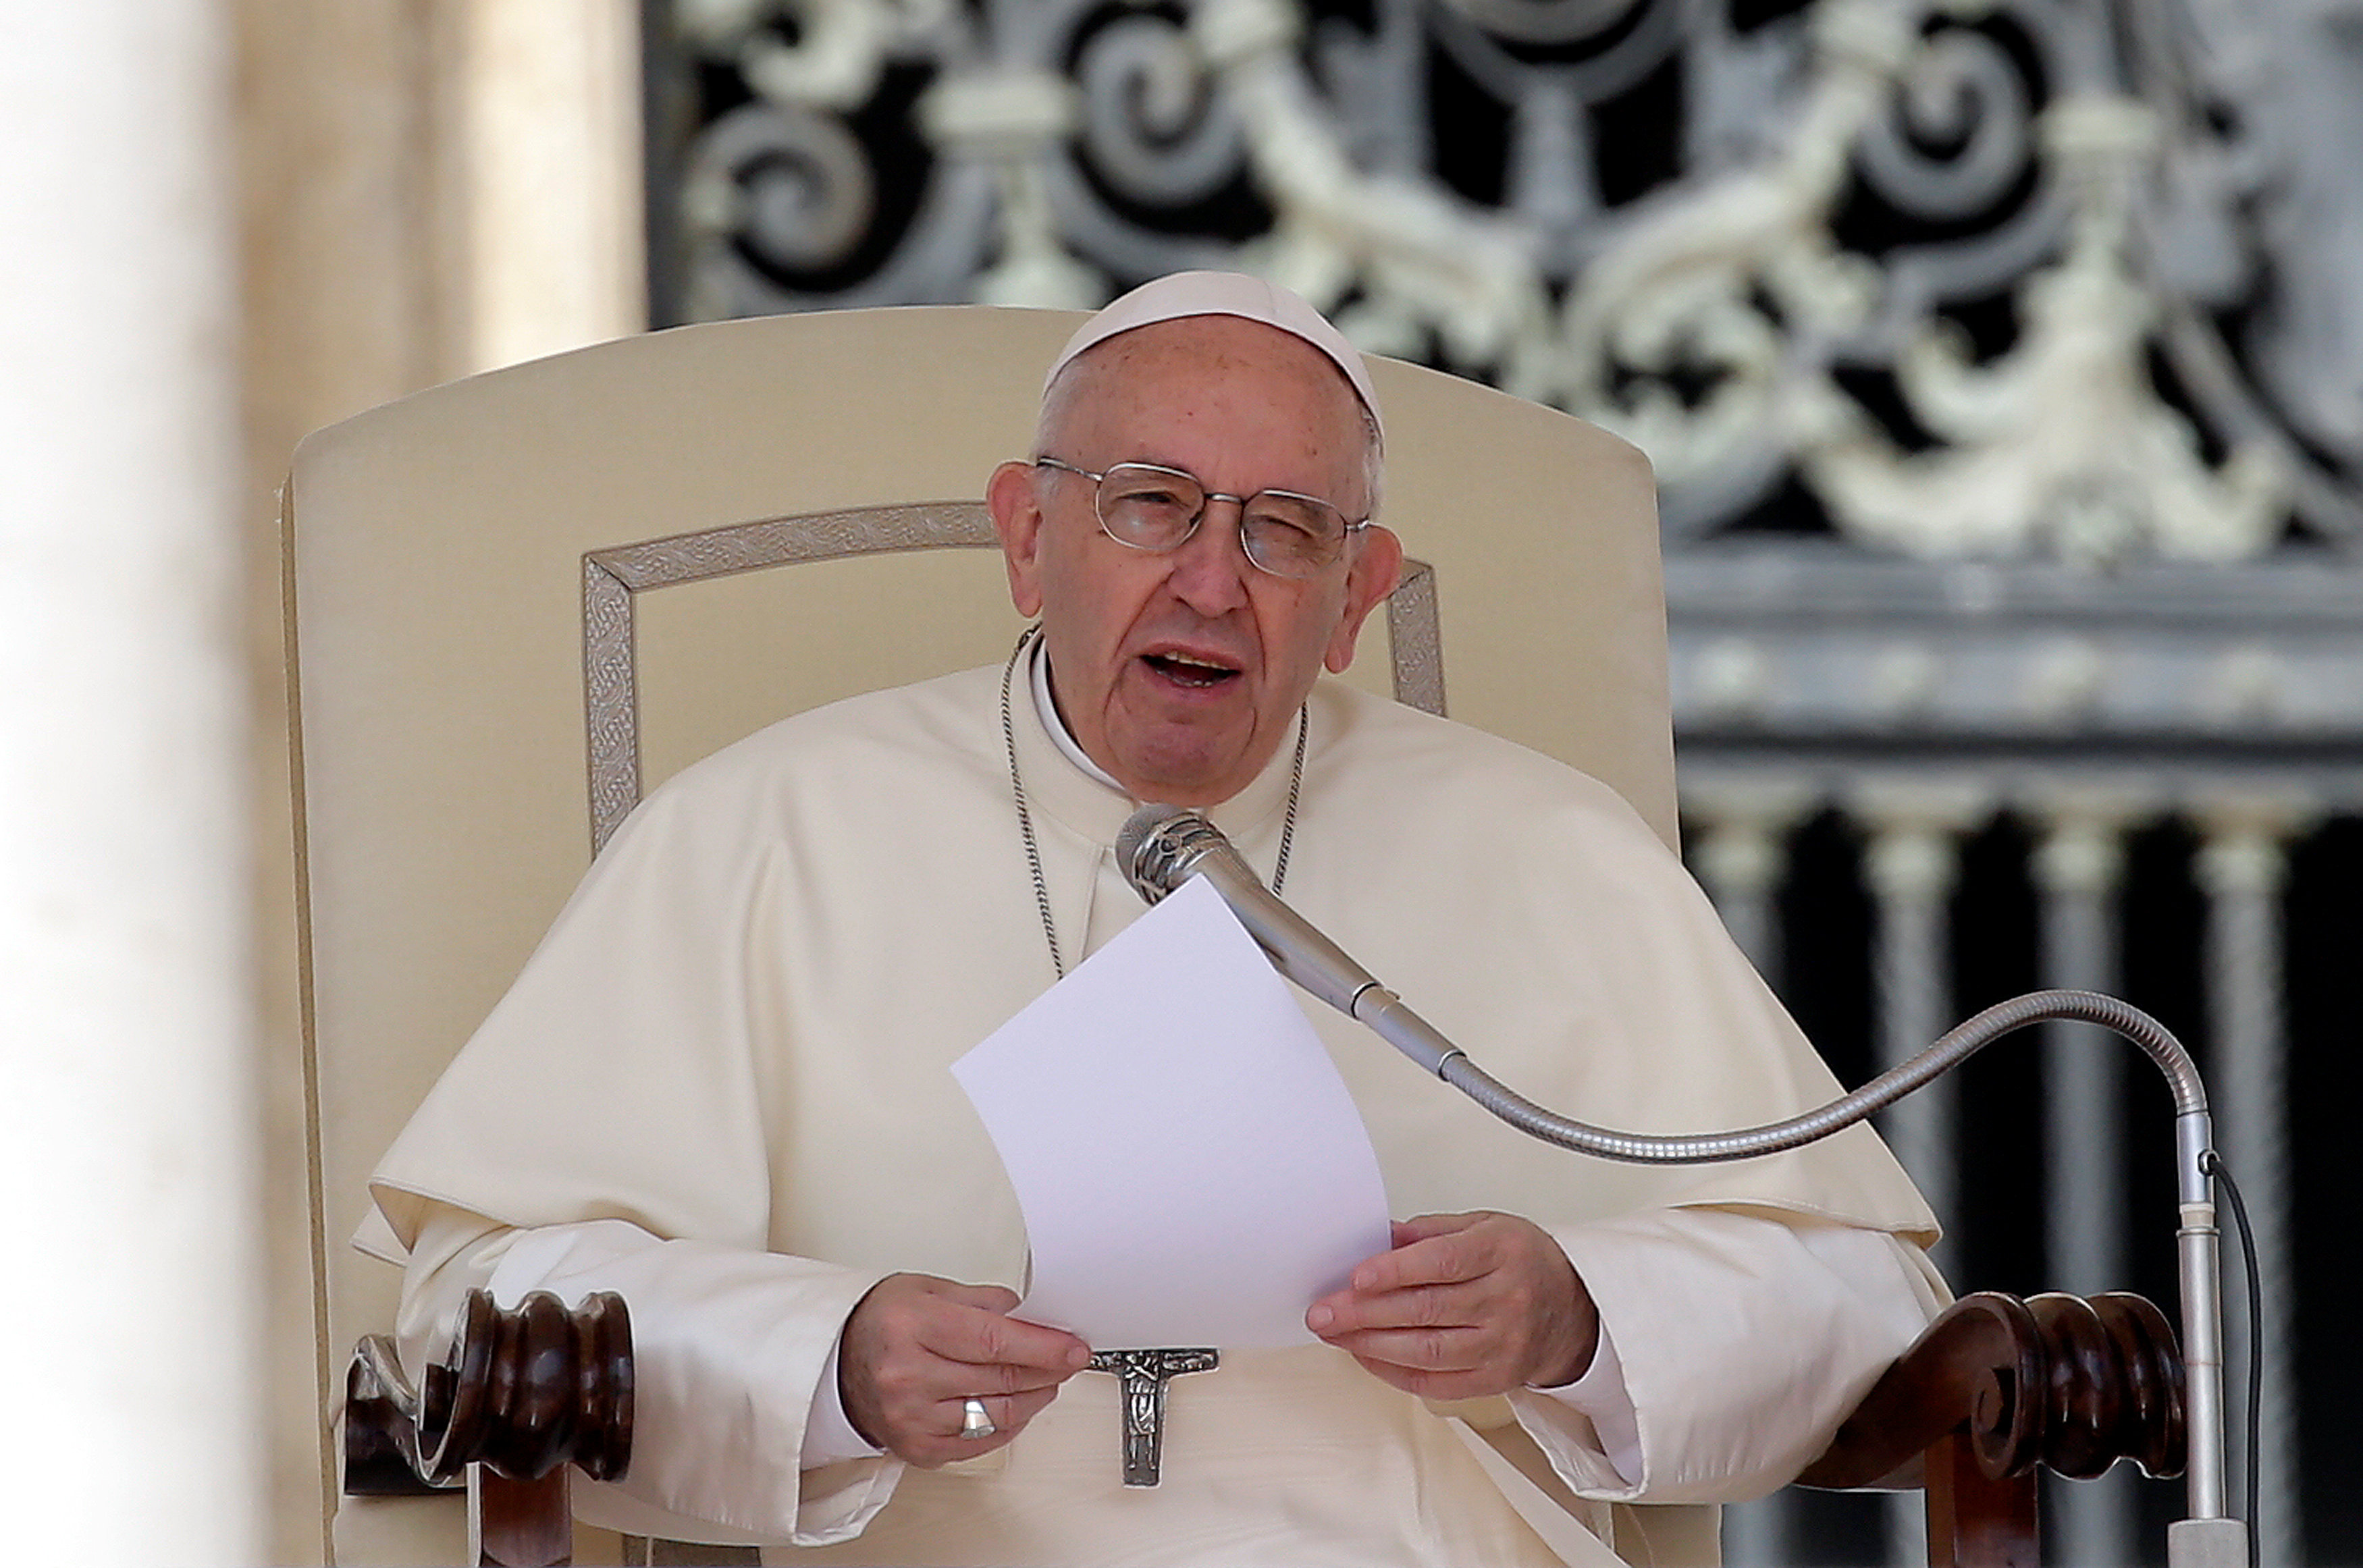 El Papa pronunciará dos homilías y un discurso en su viaje a Ginebra en junio